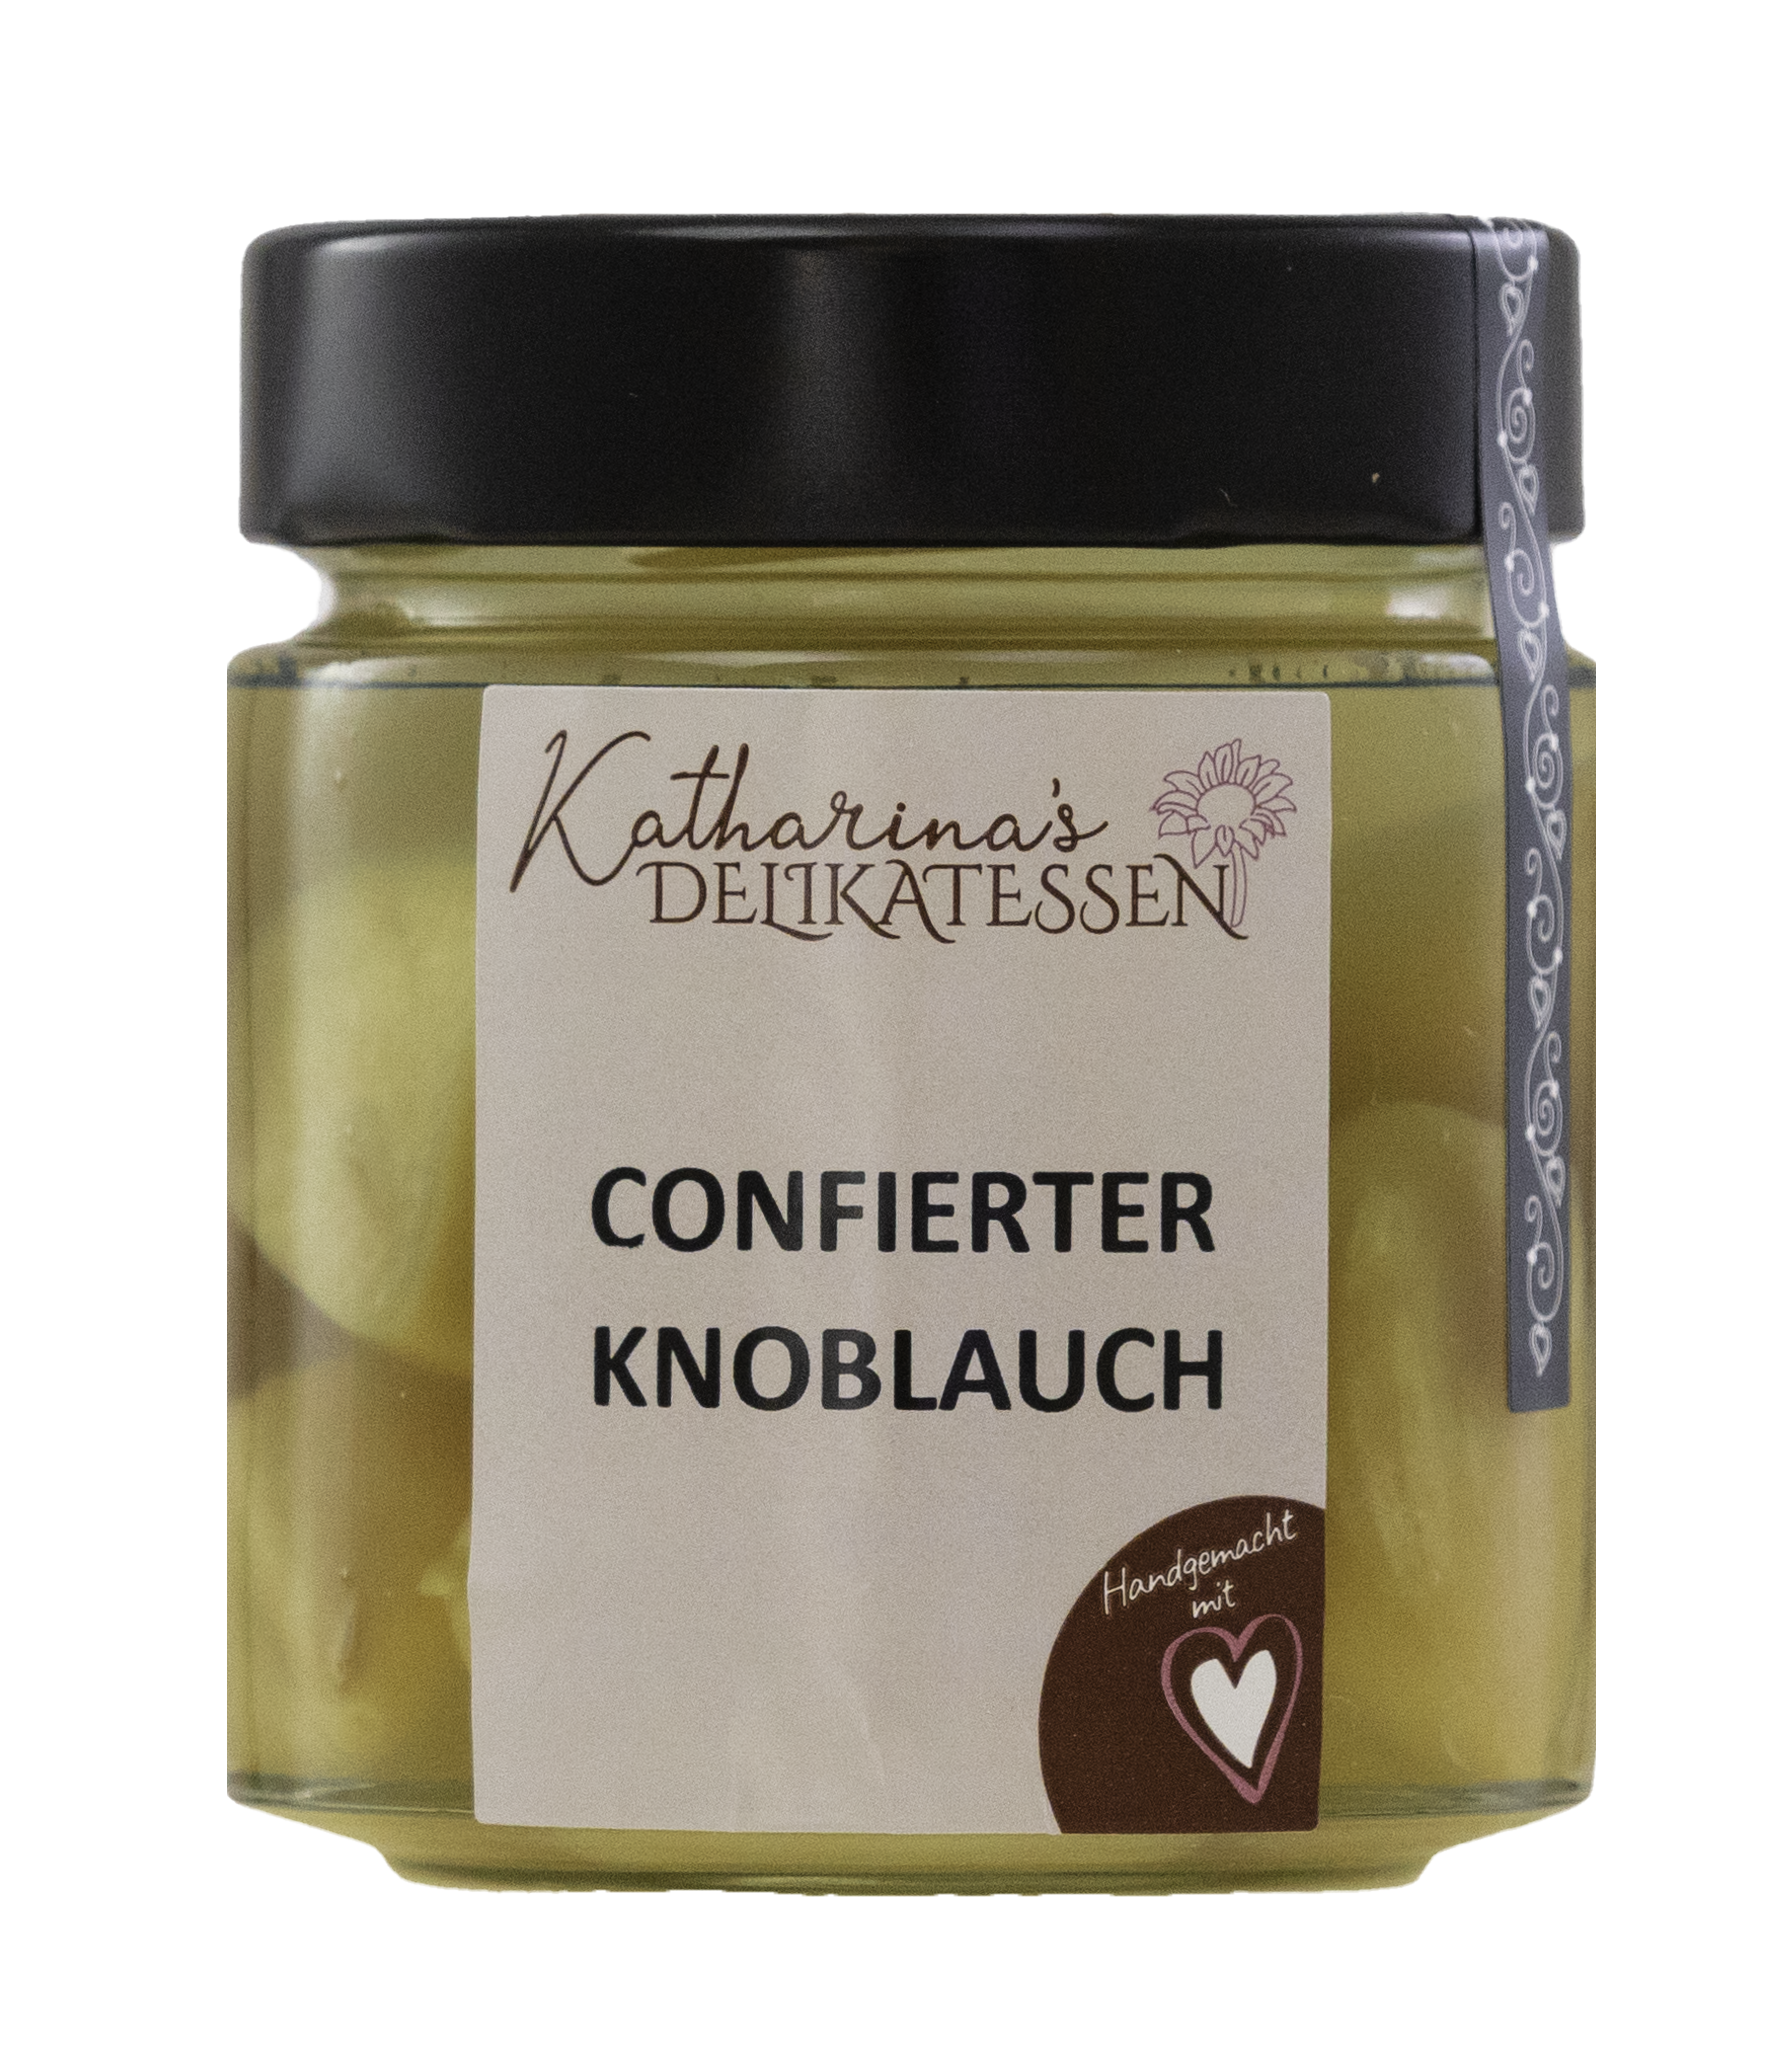 Confierter Knoblauch ist Knoblauch in Sonnenblumenöl eingekocht von Katharinas Delikatessen